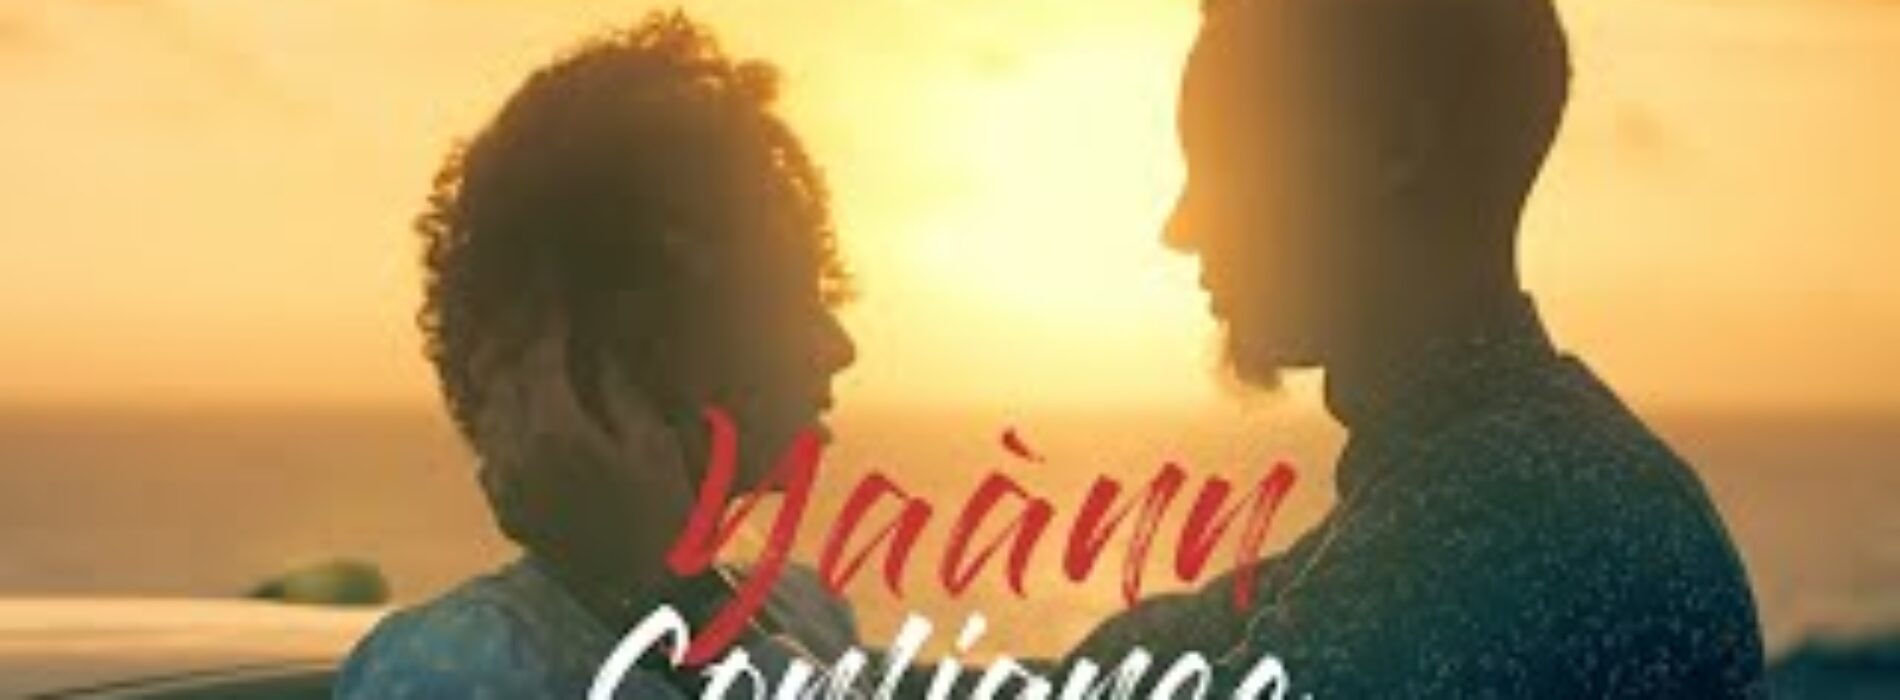 Confiance – Yaànn [CLIP OFFICIEL] – Janvier 2021